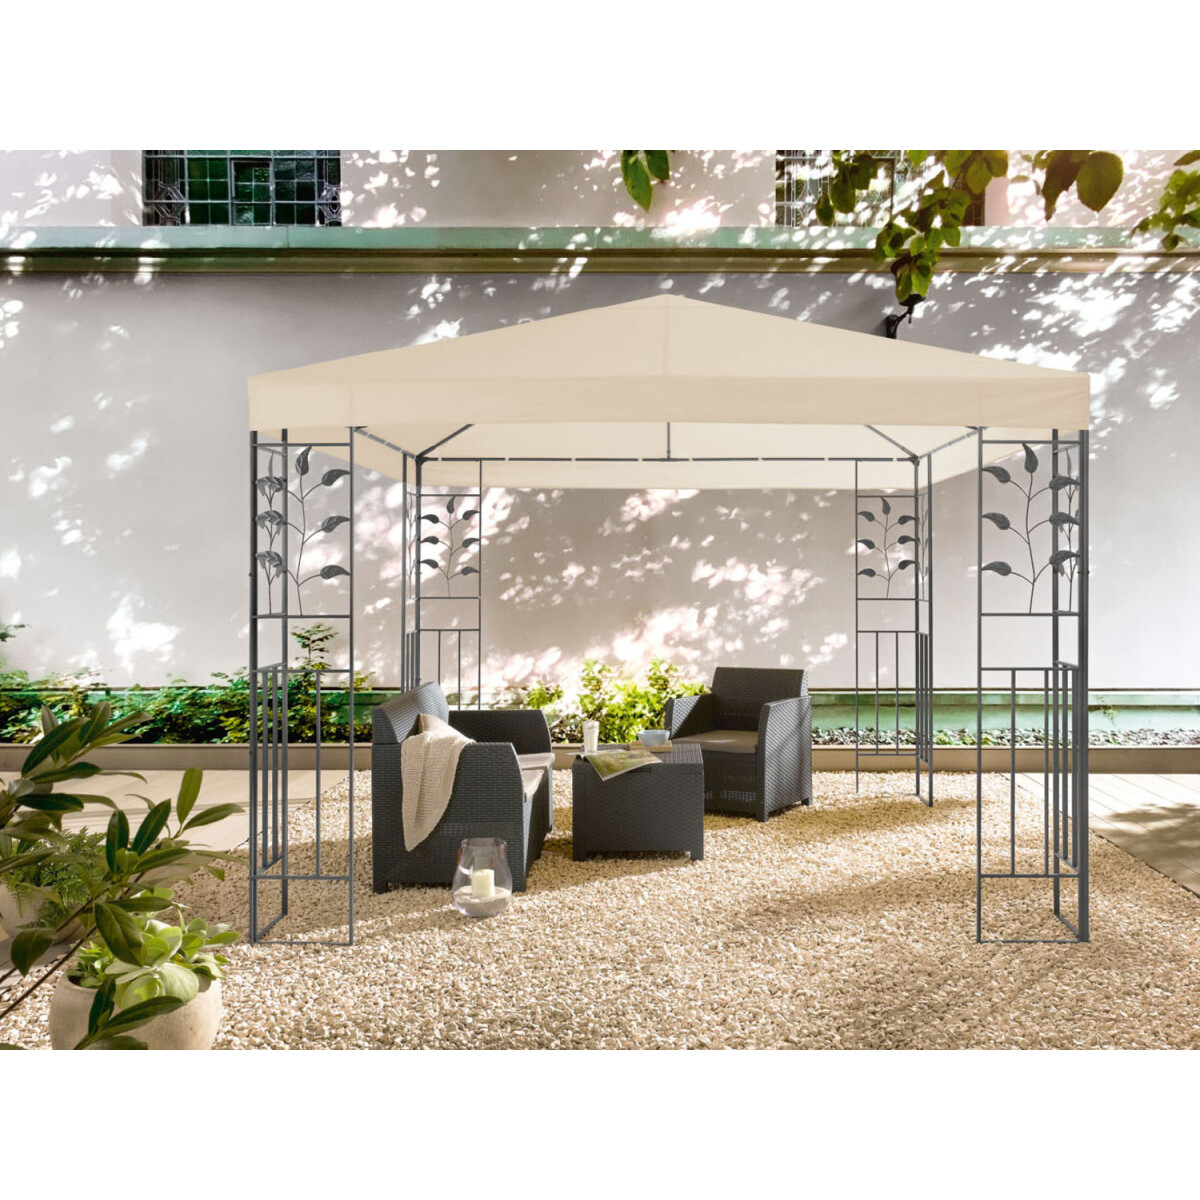 LIVARNO home Pavillon, 3 x 3 m, mit Stahlgestell, beige - B-Ware  Transportschaden Kosmetisch, 156,99 €